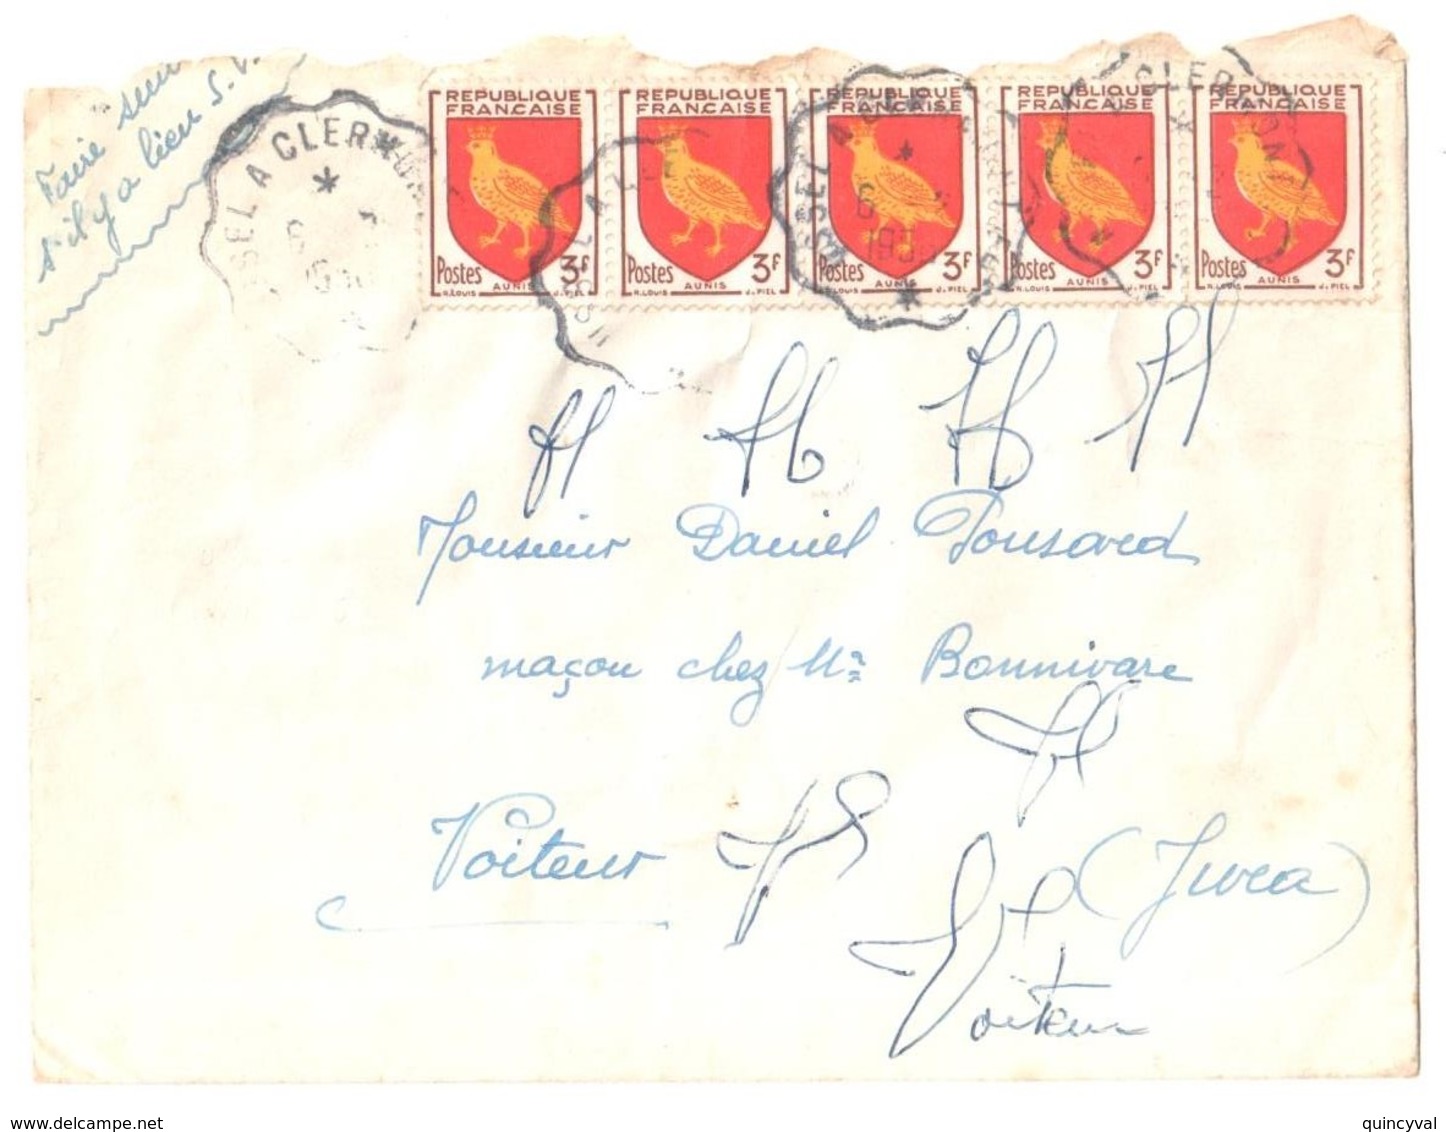 USSEL à CLERMONT Ob Courrier Convoyeur Ndulé 6 2 1956 Lettre 3 F Aunis Yv 1004 - Storia Postale